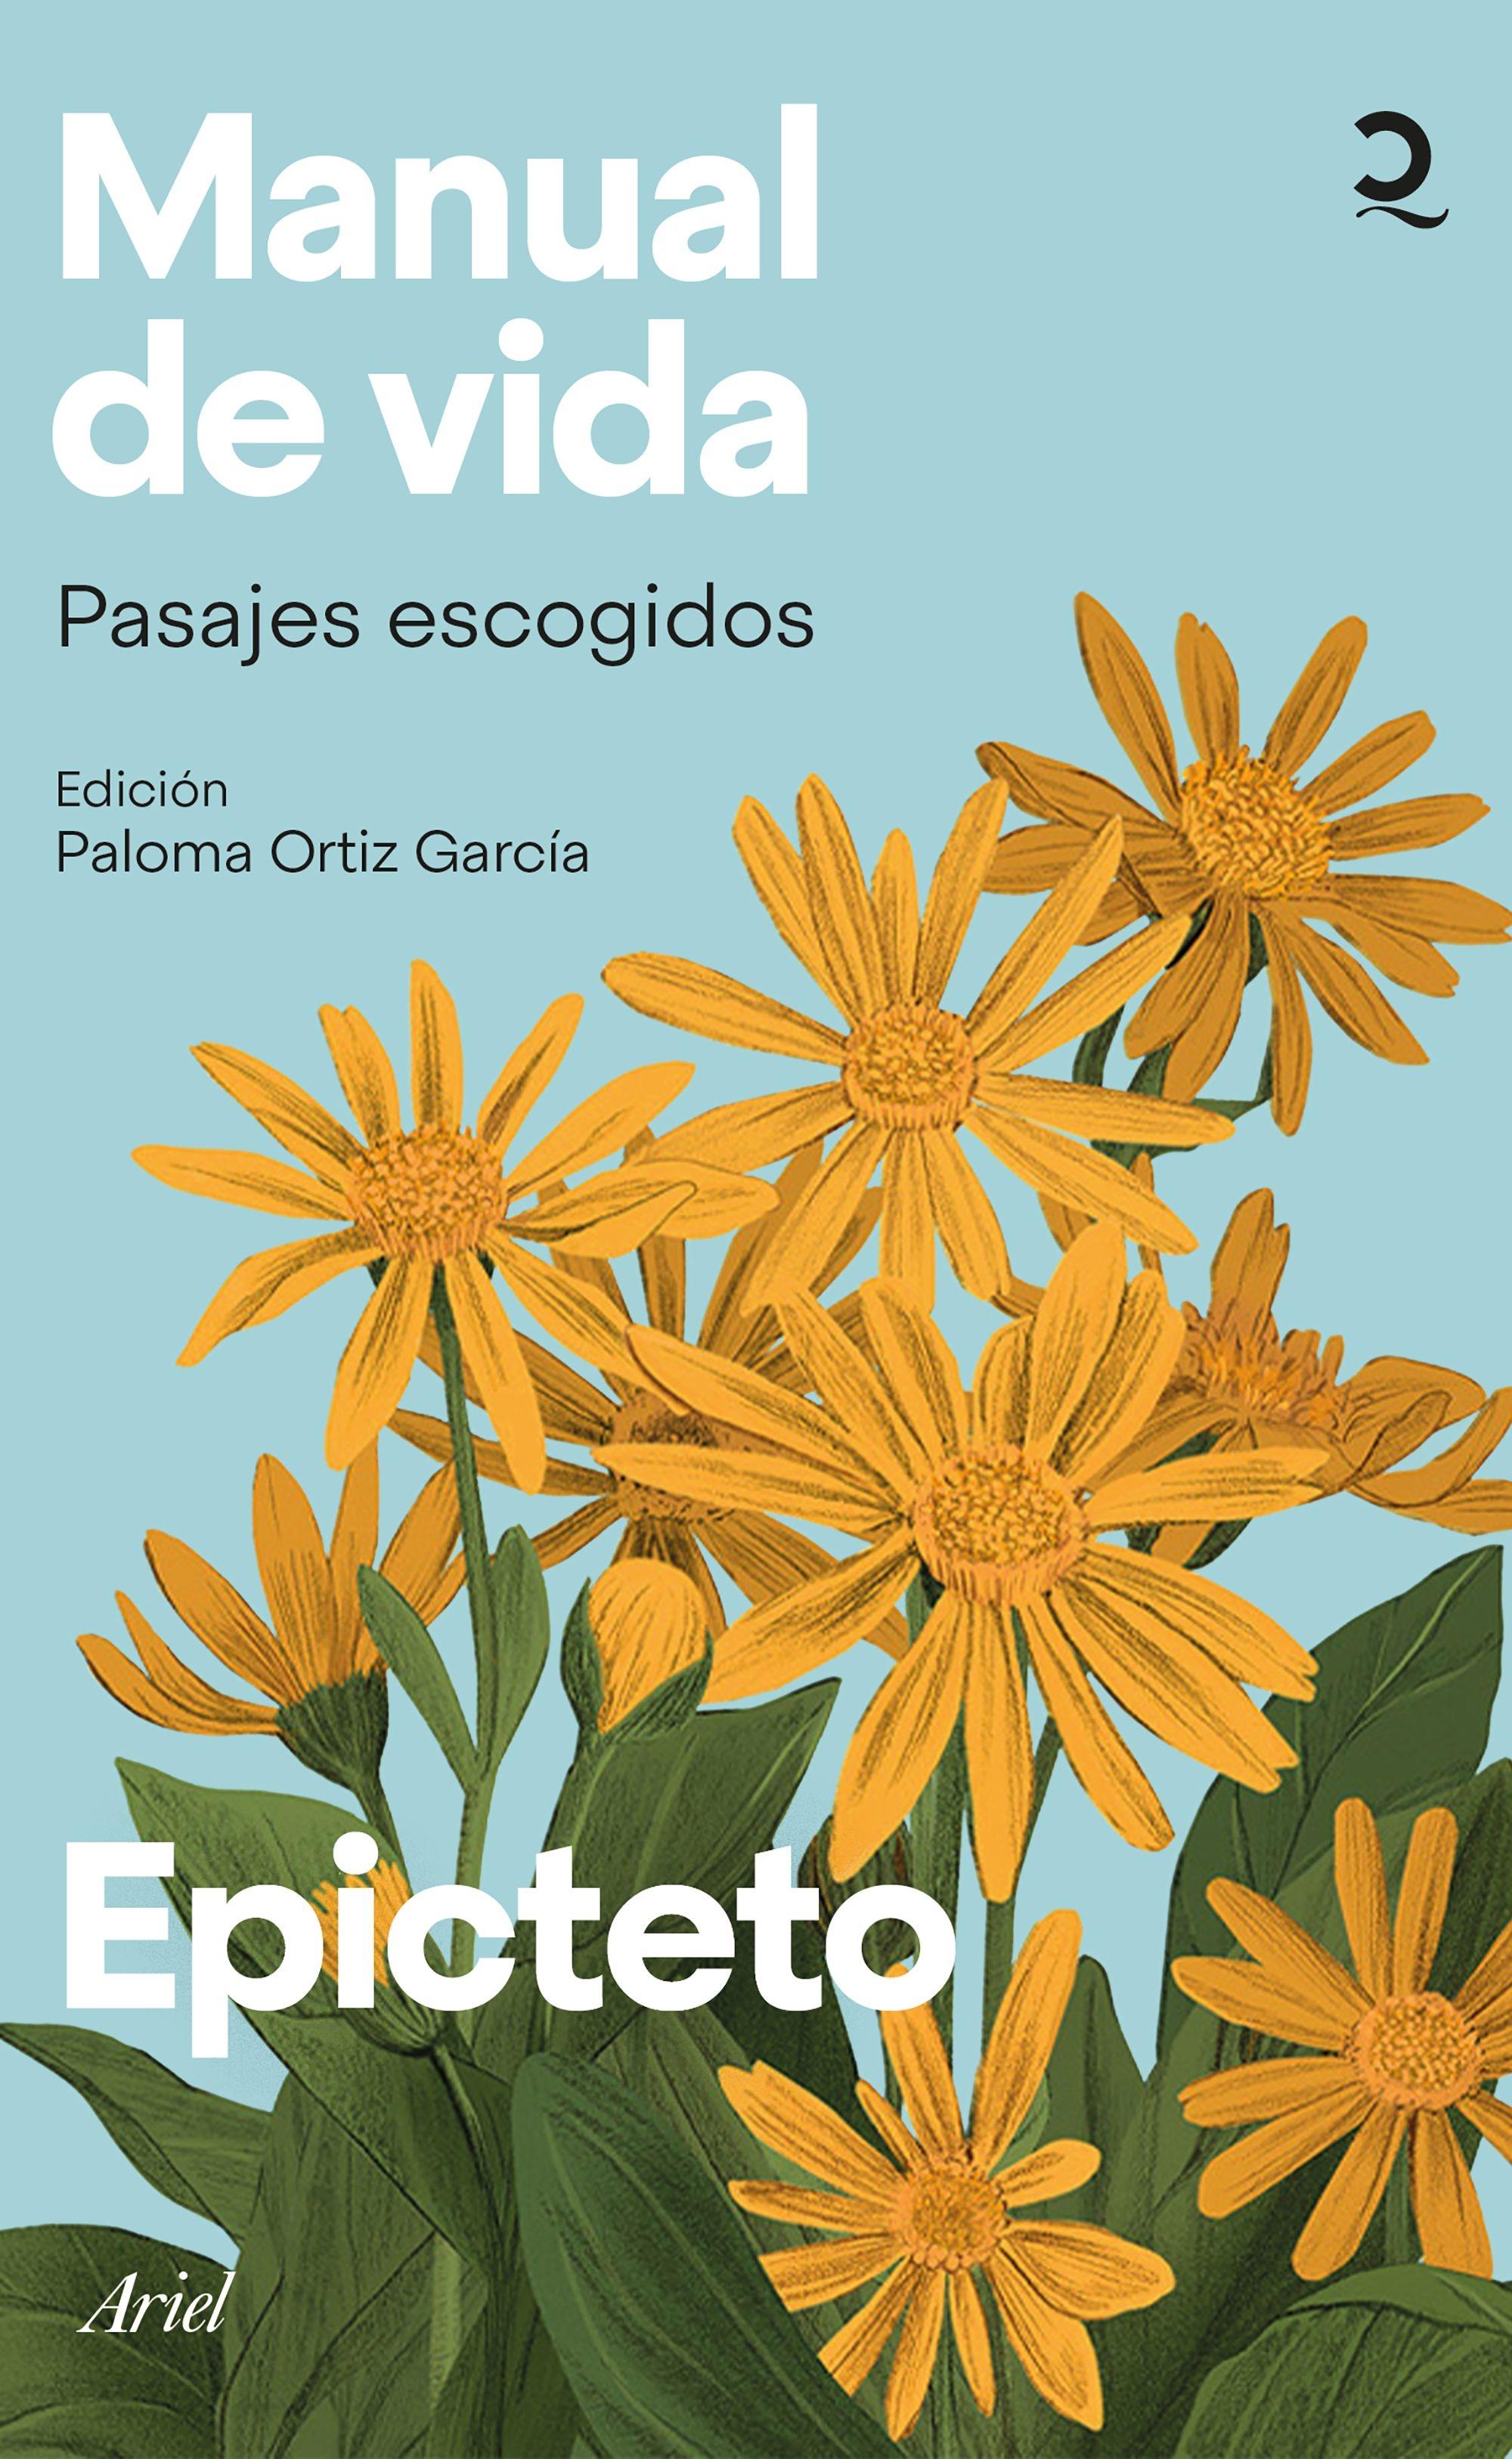 Manual de vida "Pasajes escogidos. Edición de Paloma Ortiz García". 